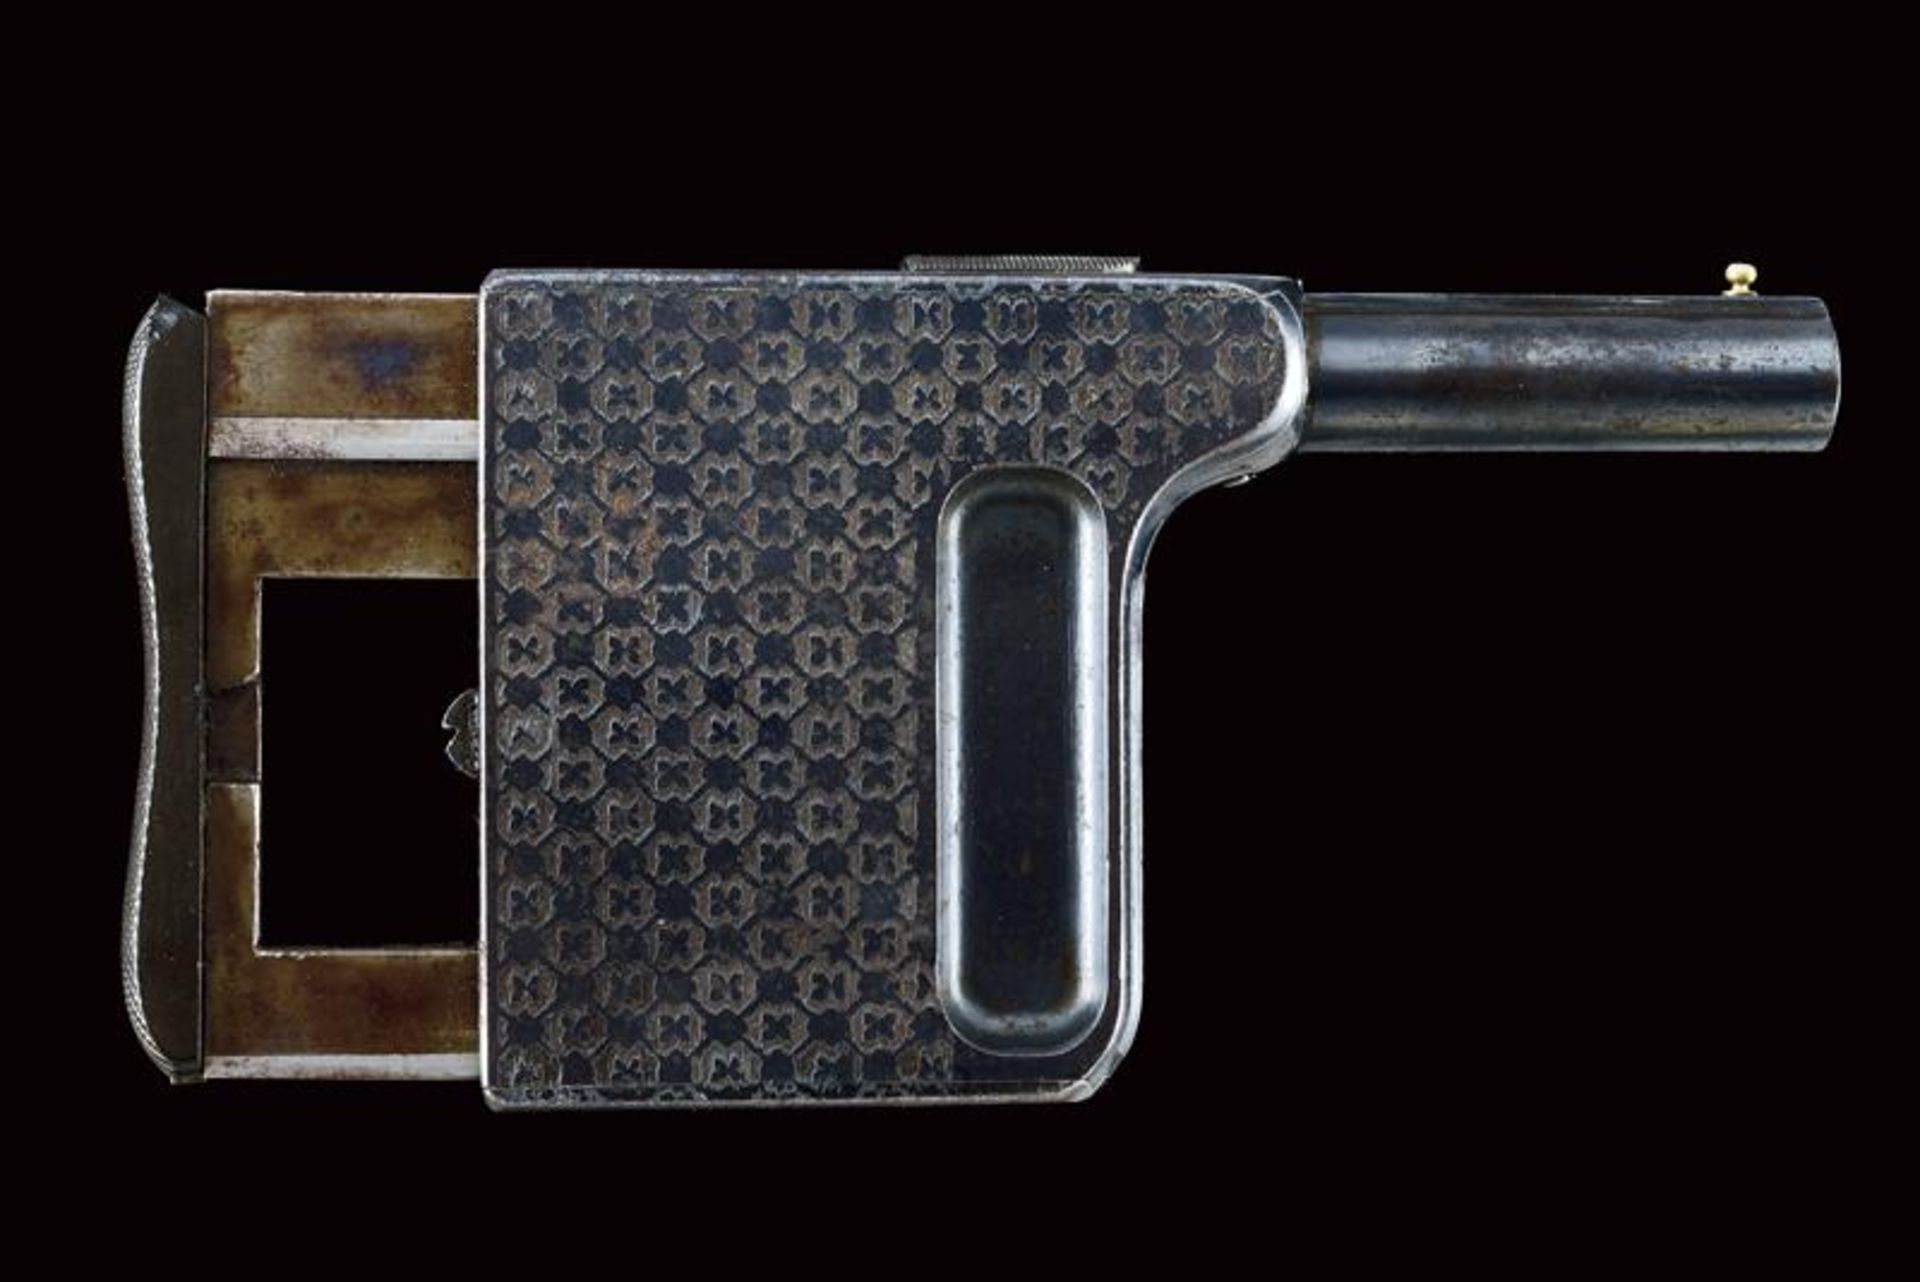 A rare Gaulois center fire palm pistol